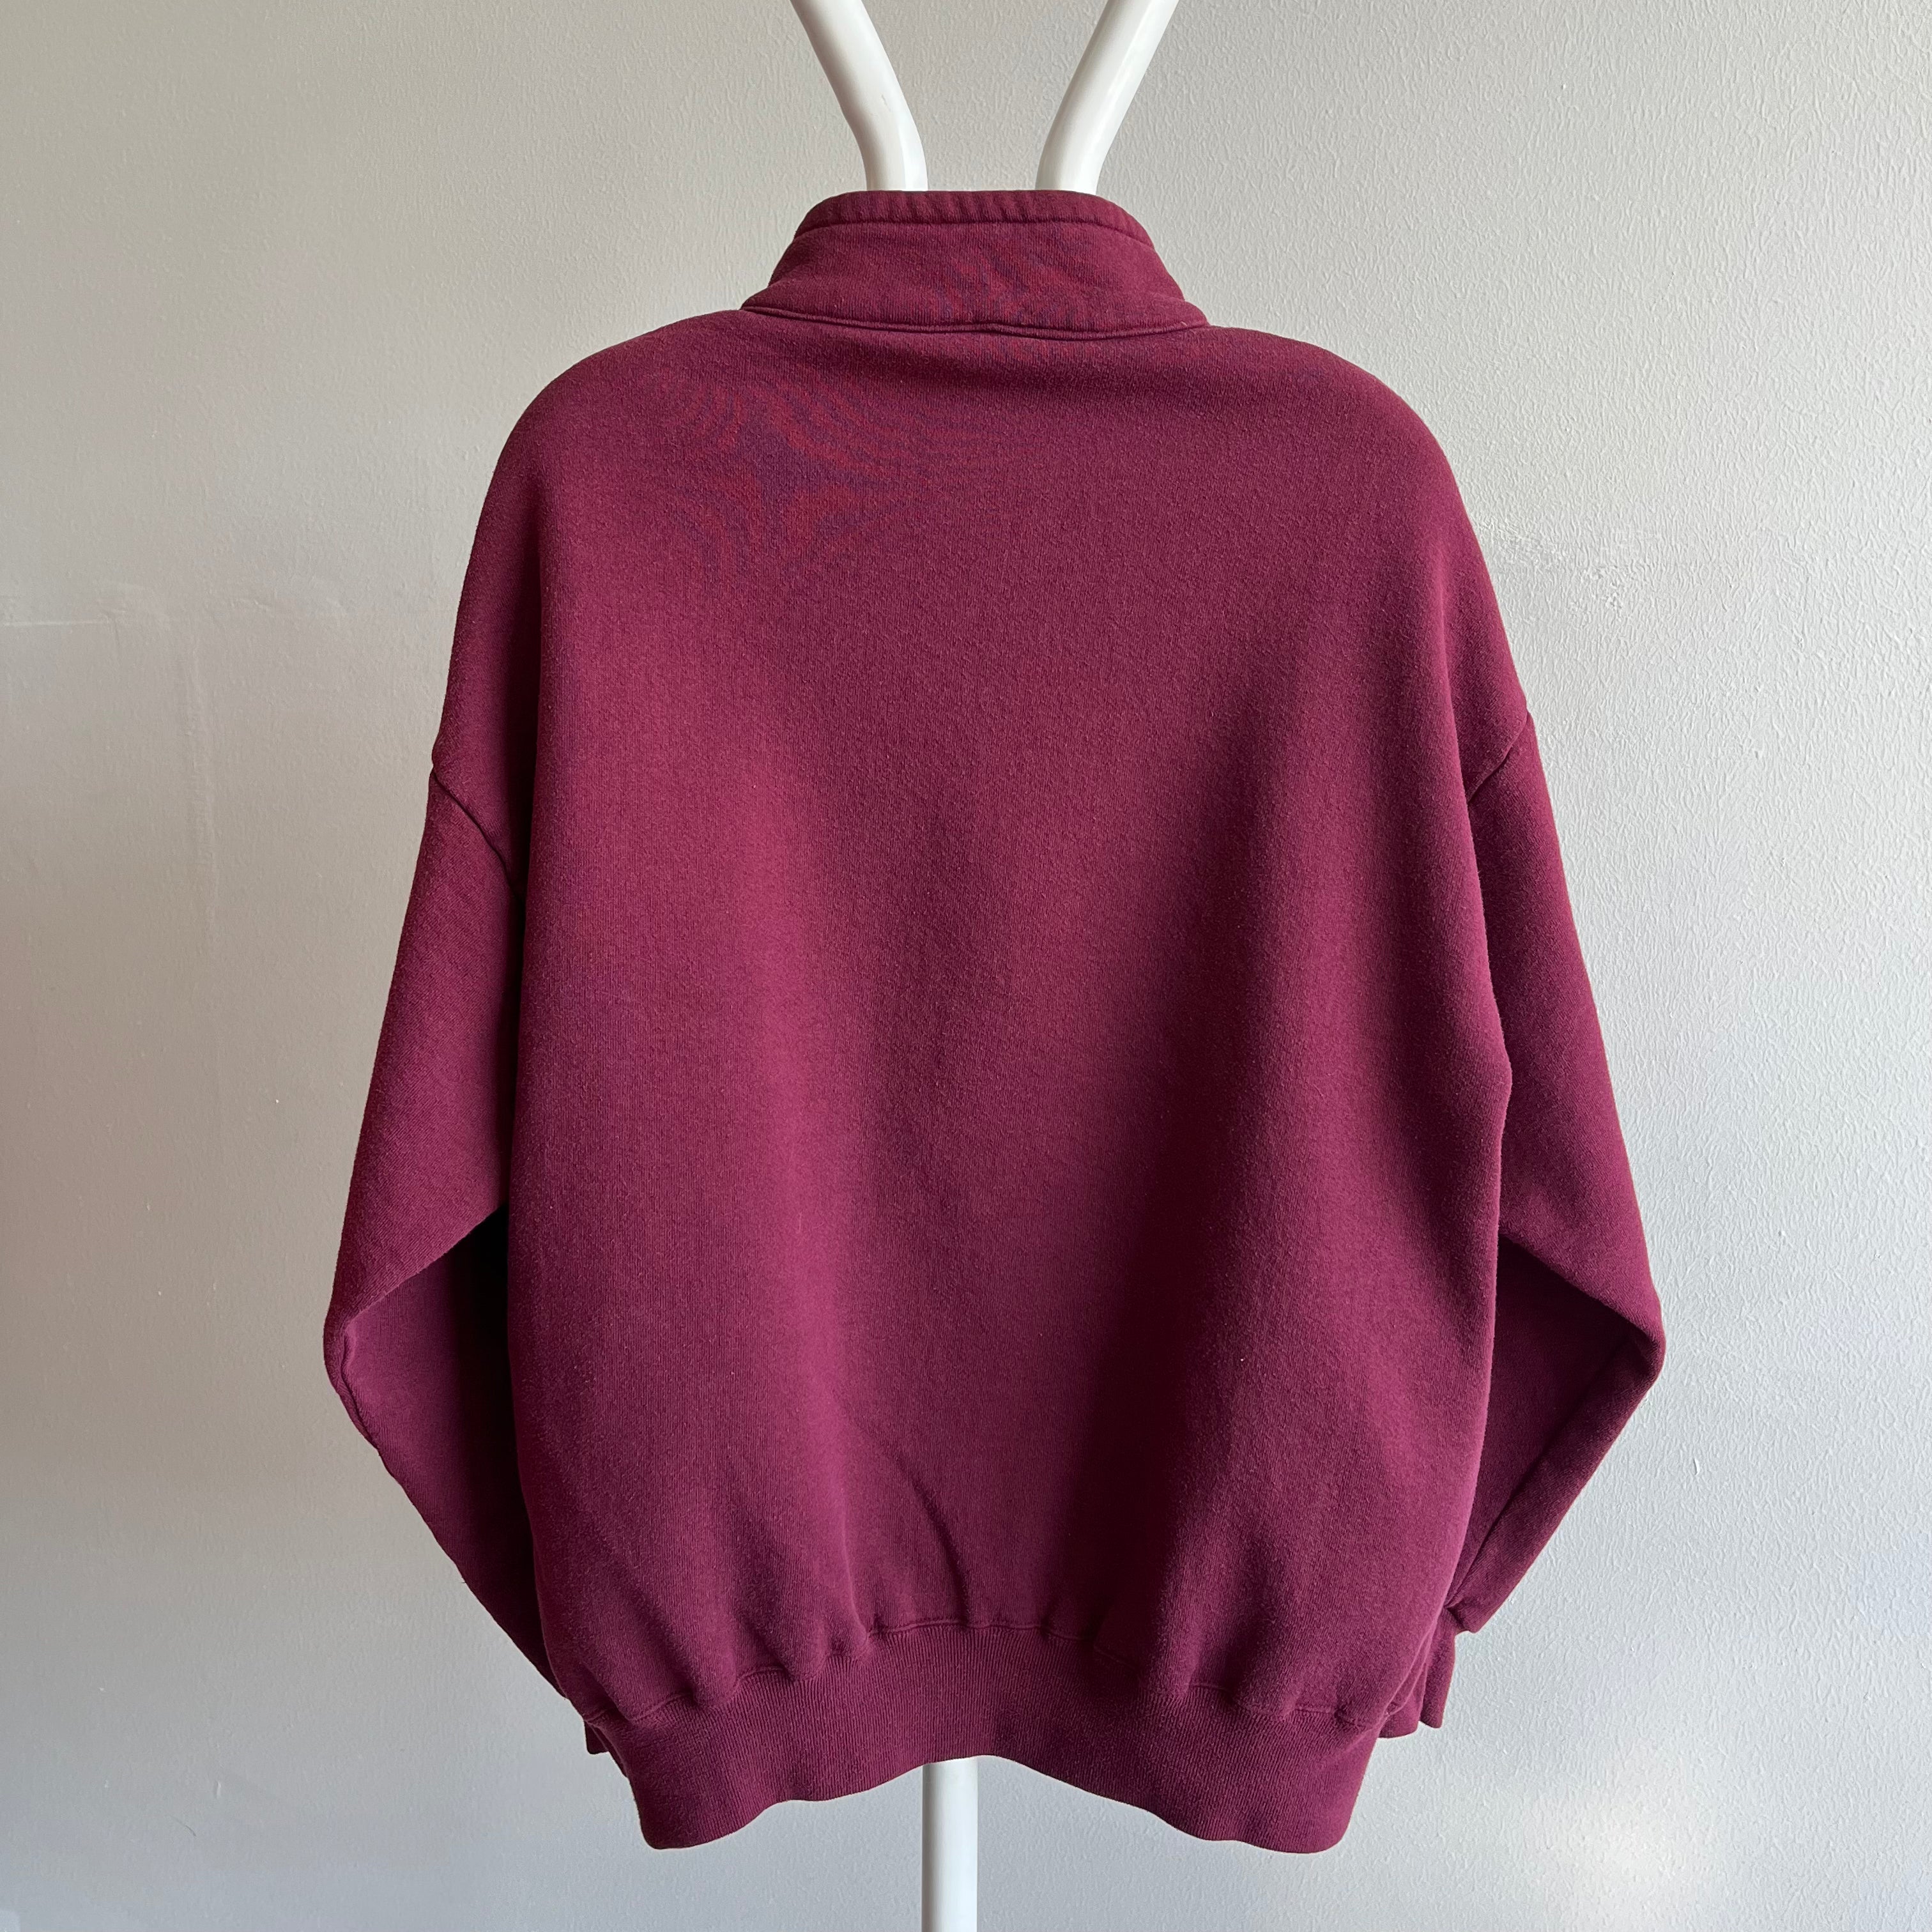 1980s Jerzees Super Sweats 1/4 Zip Collared Sweatshirt